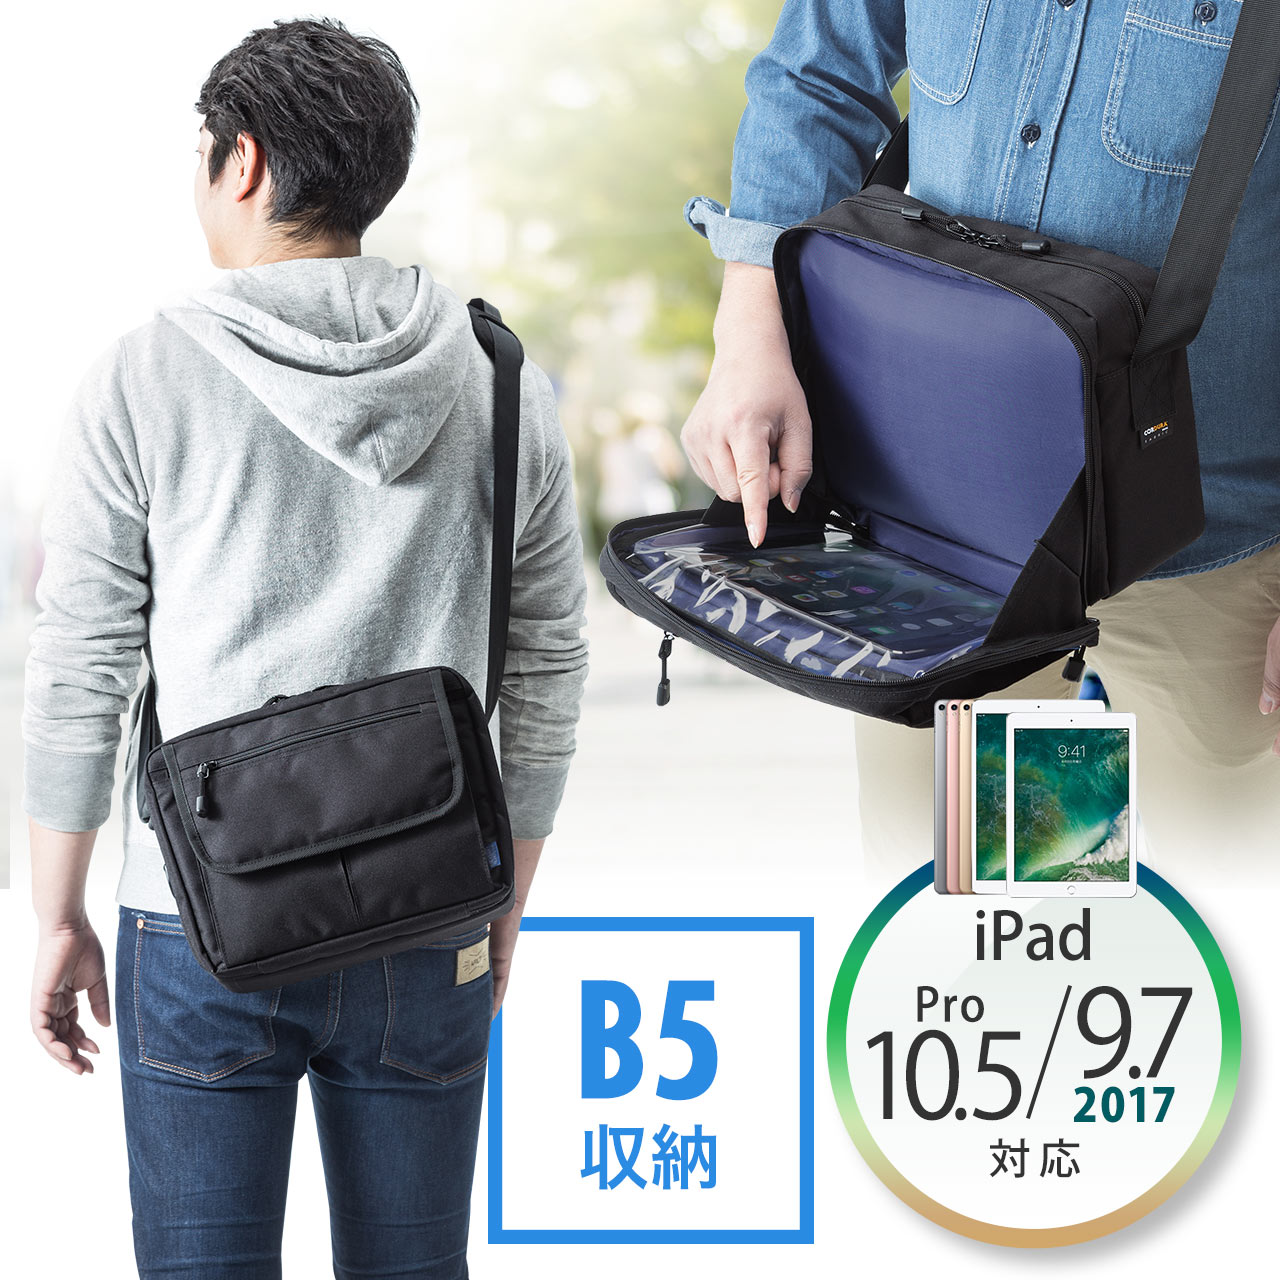 ショルダーバッグ Ipad収納 入れたまま操作可能 斜めがけバッグ 0 Bag115の販売商品 通販ならサンワダイレクト